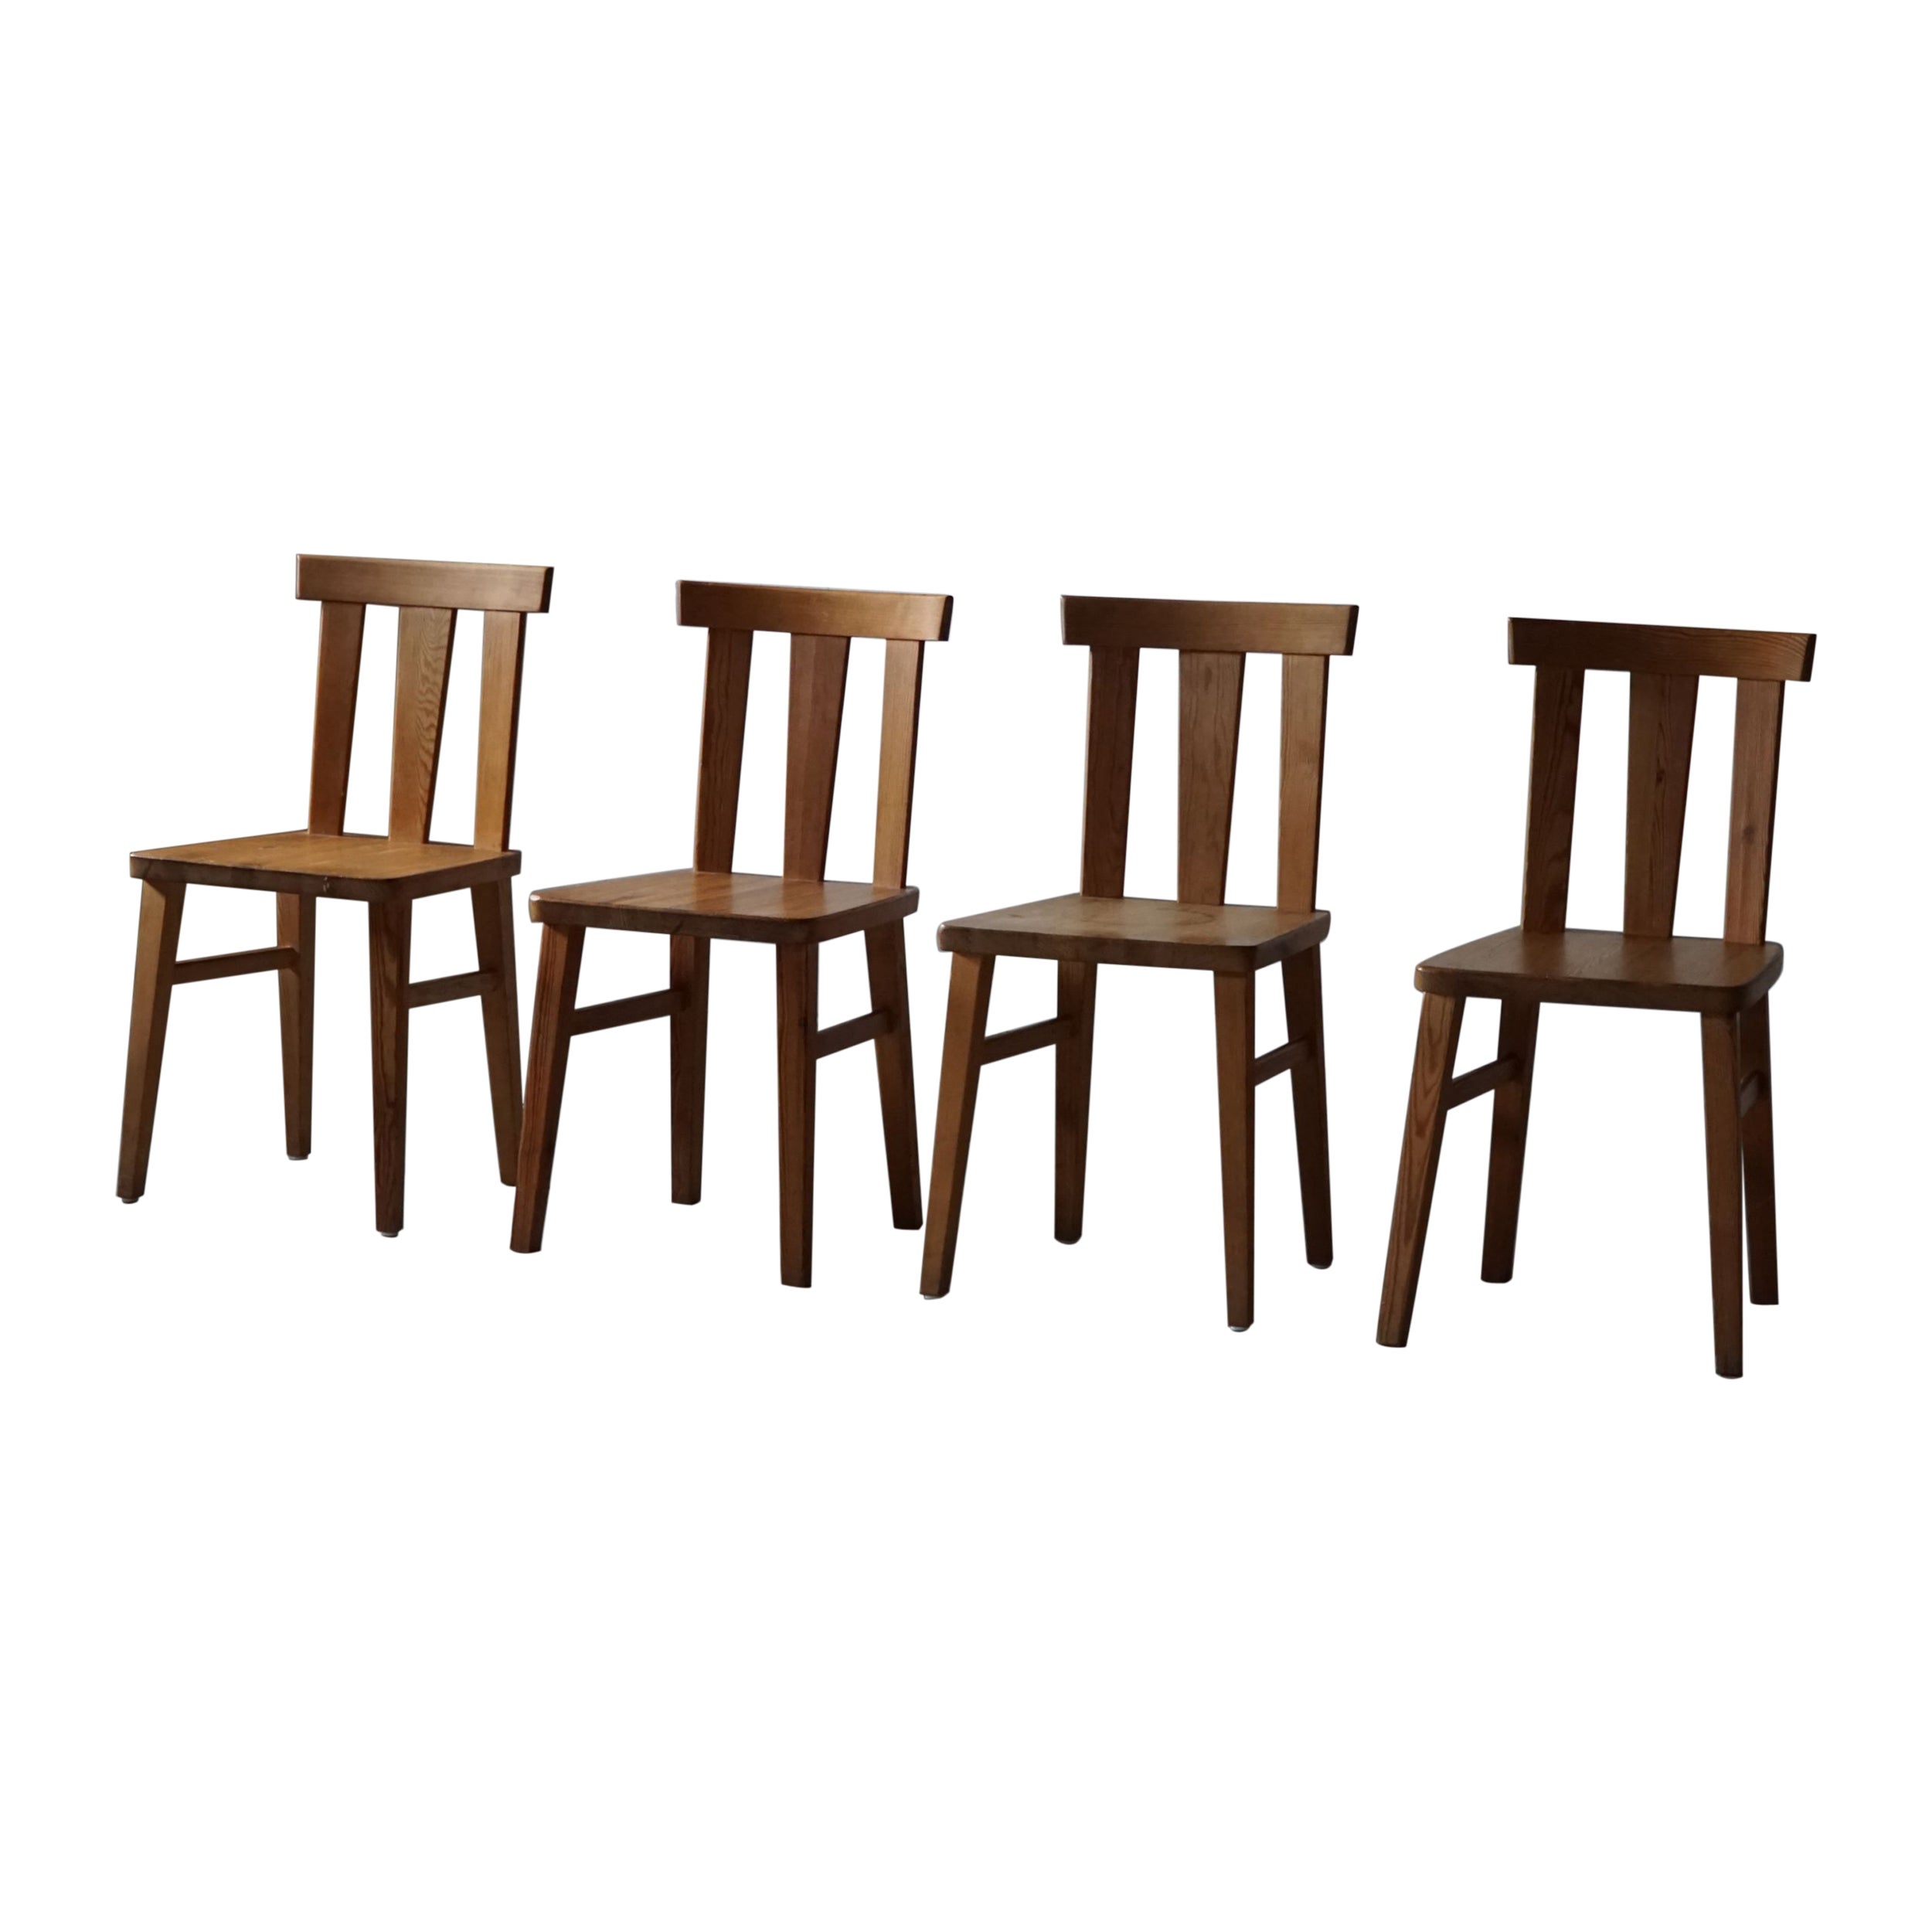 Ensemble de 4 chaises modernes suédoises en pin massif, style Axel Einar Hjorth, années 1930